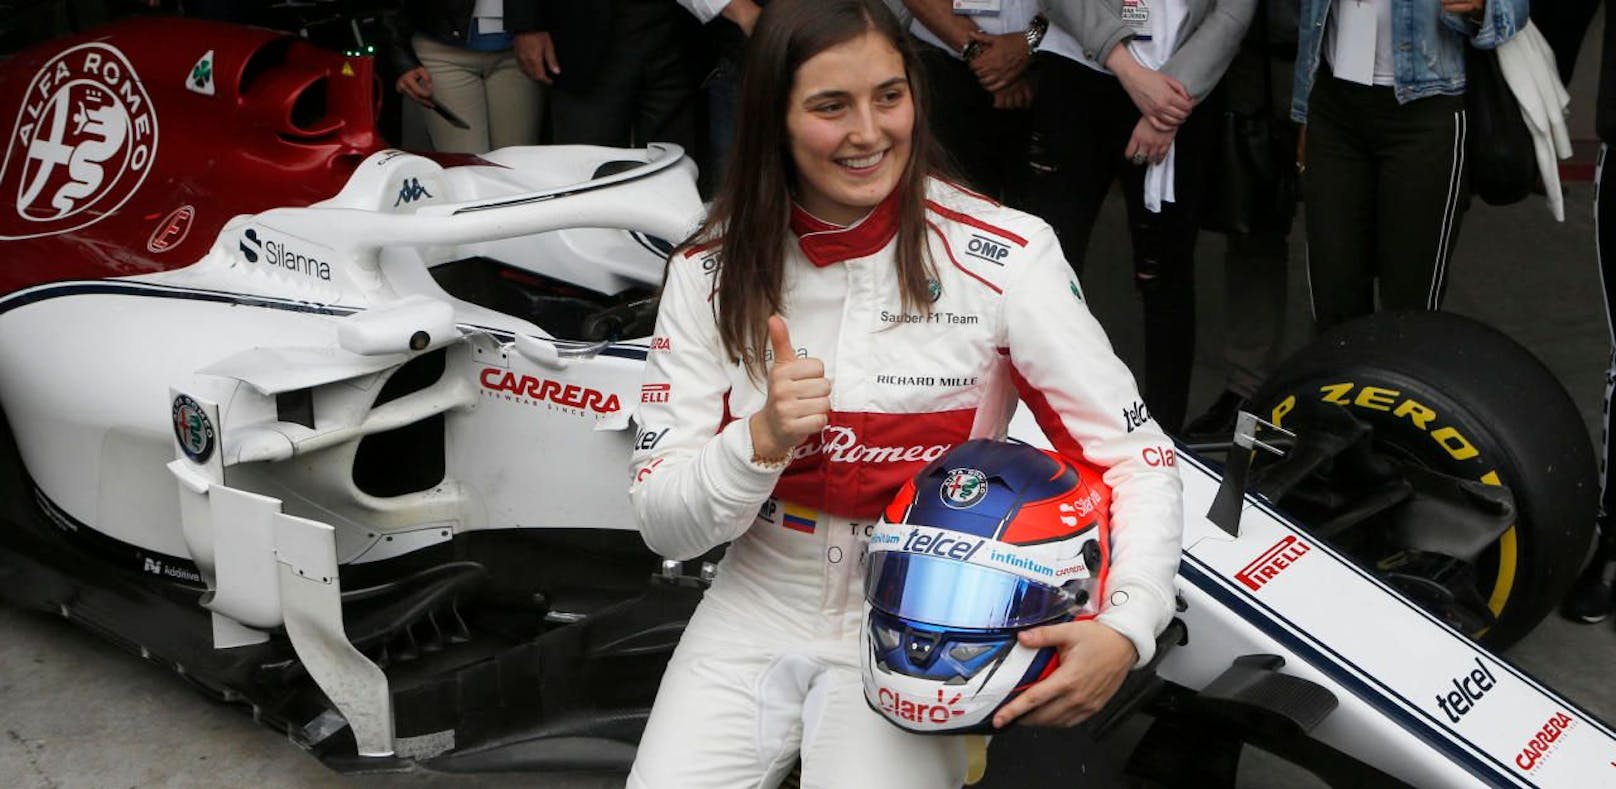 Tatiana Calderón ist seit drei Jahren die erste Frau in der Formel 1.